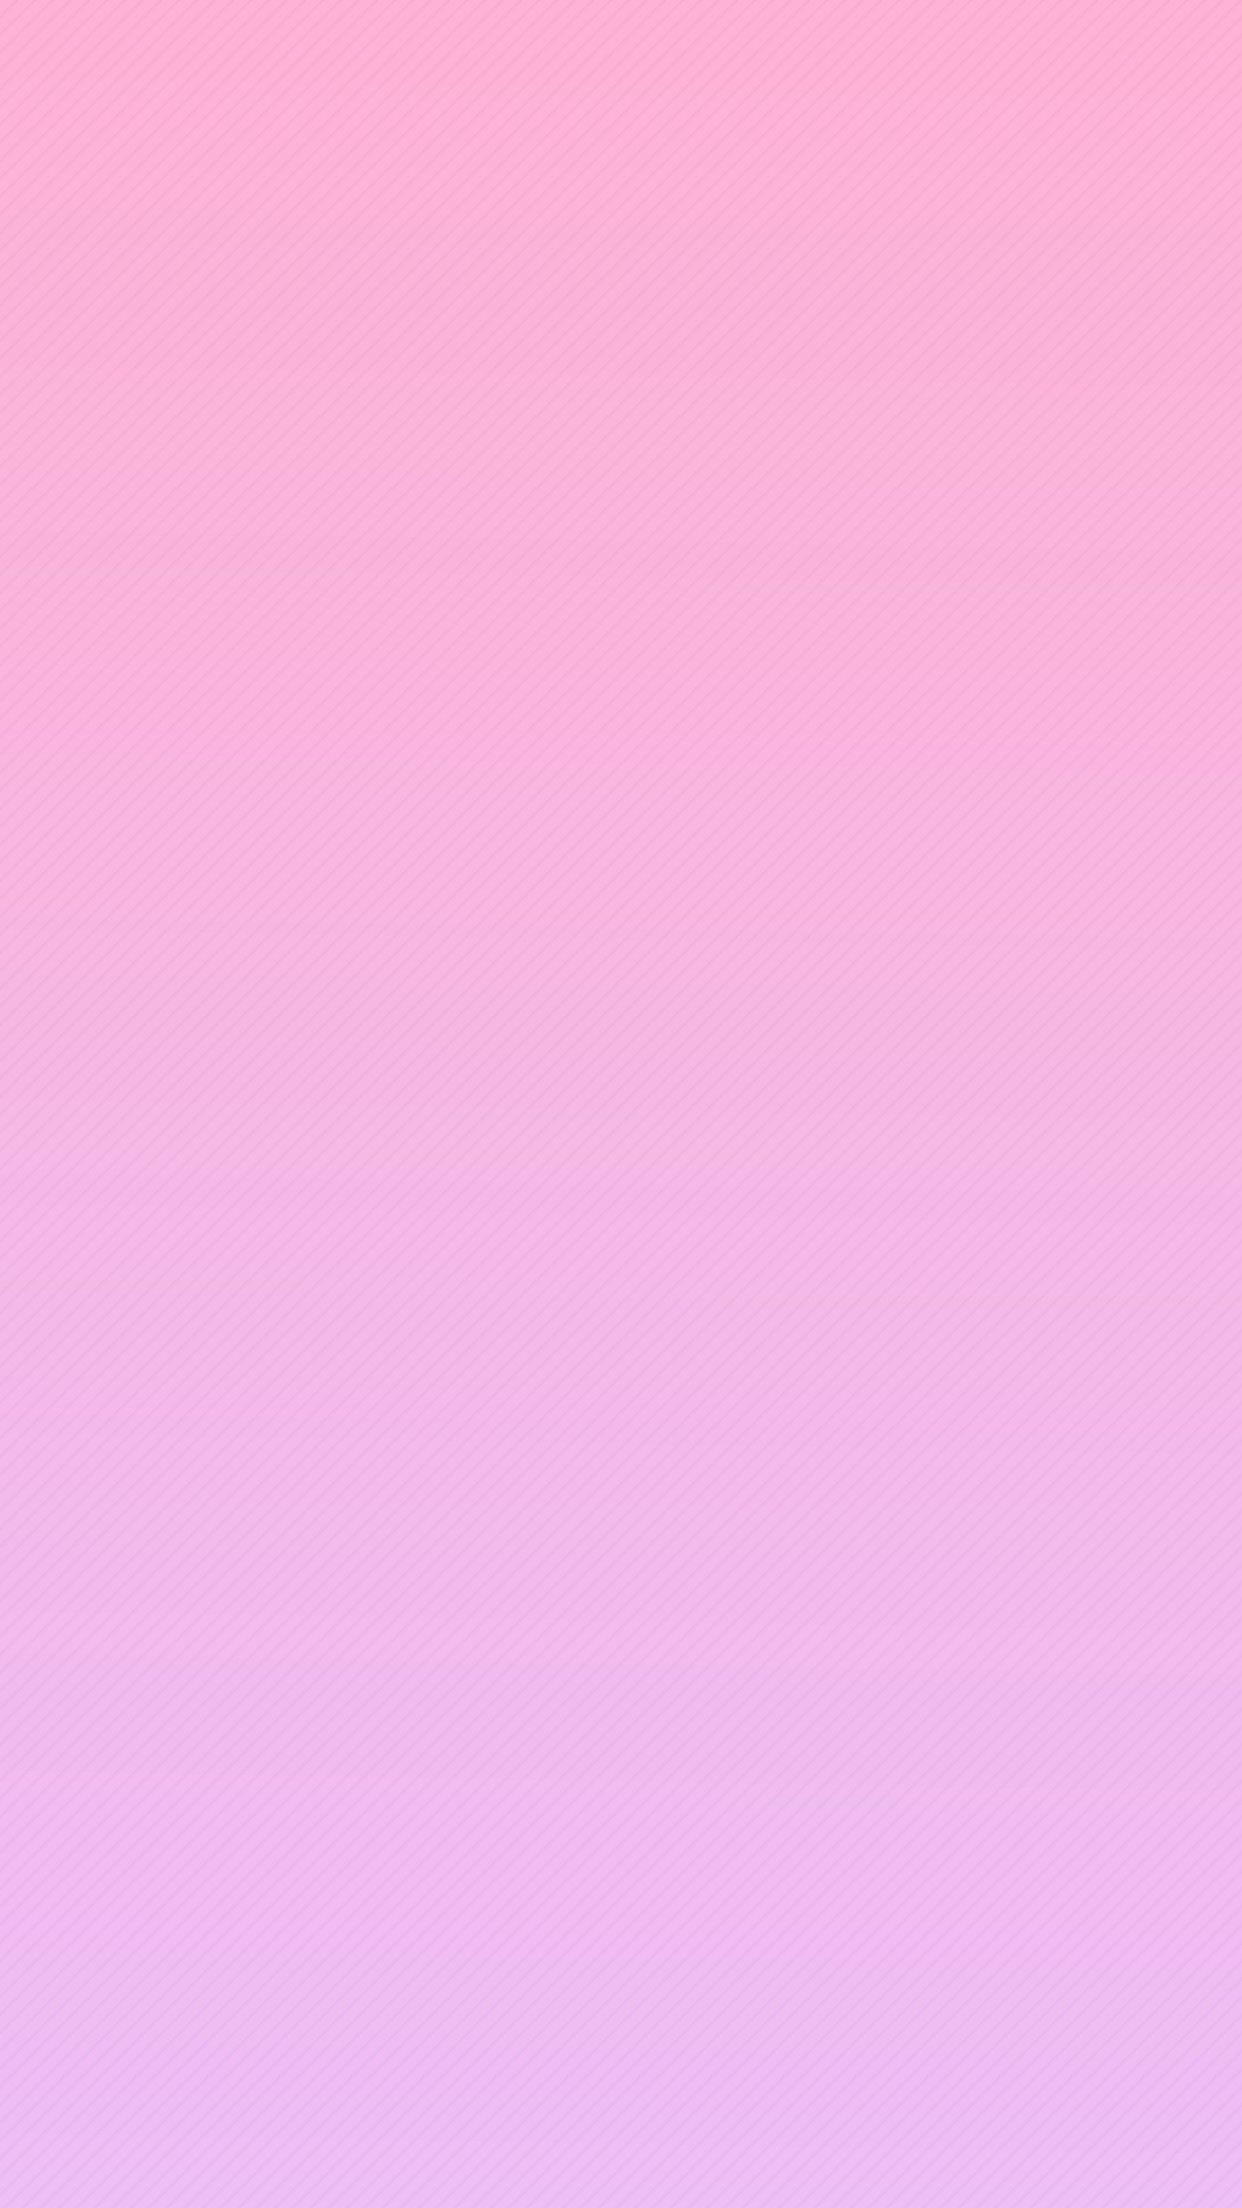 [55+] Images of Pink Wallpaper | WallpaperSafari